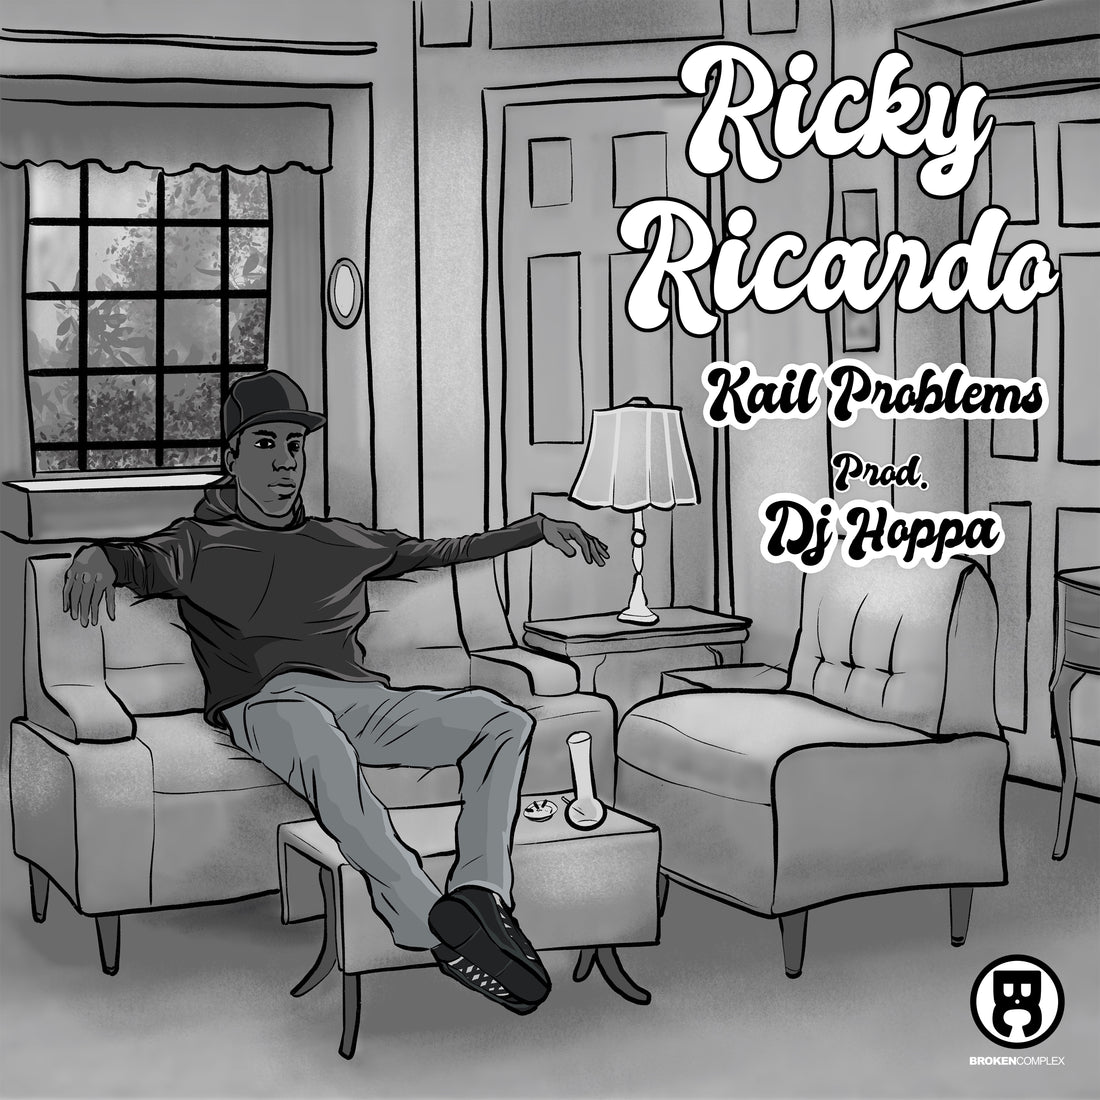 New Single: Kail Problems - "Ricky Ricardo"